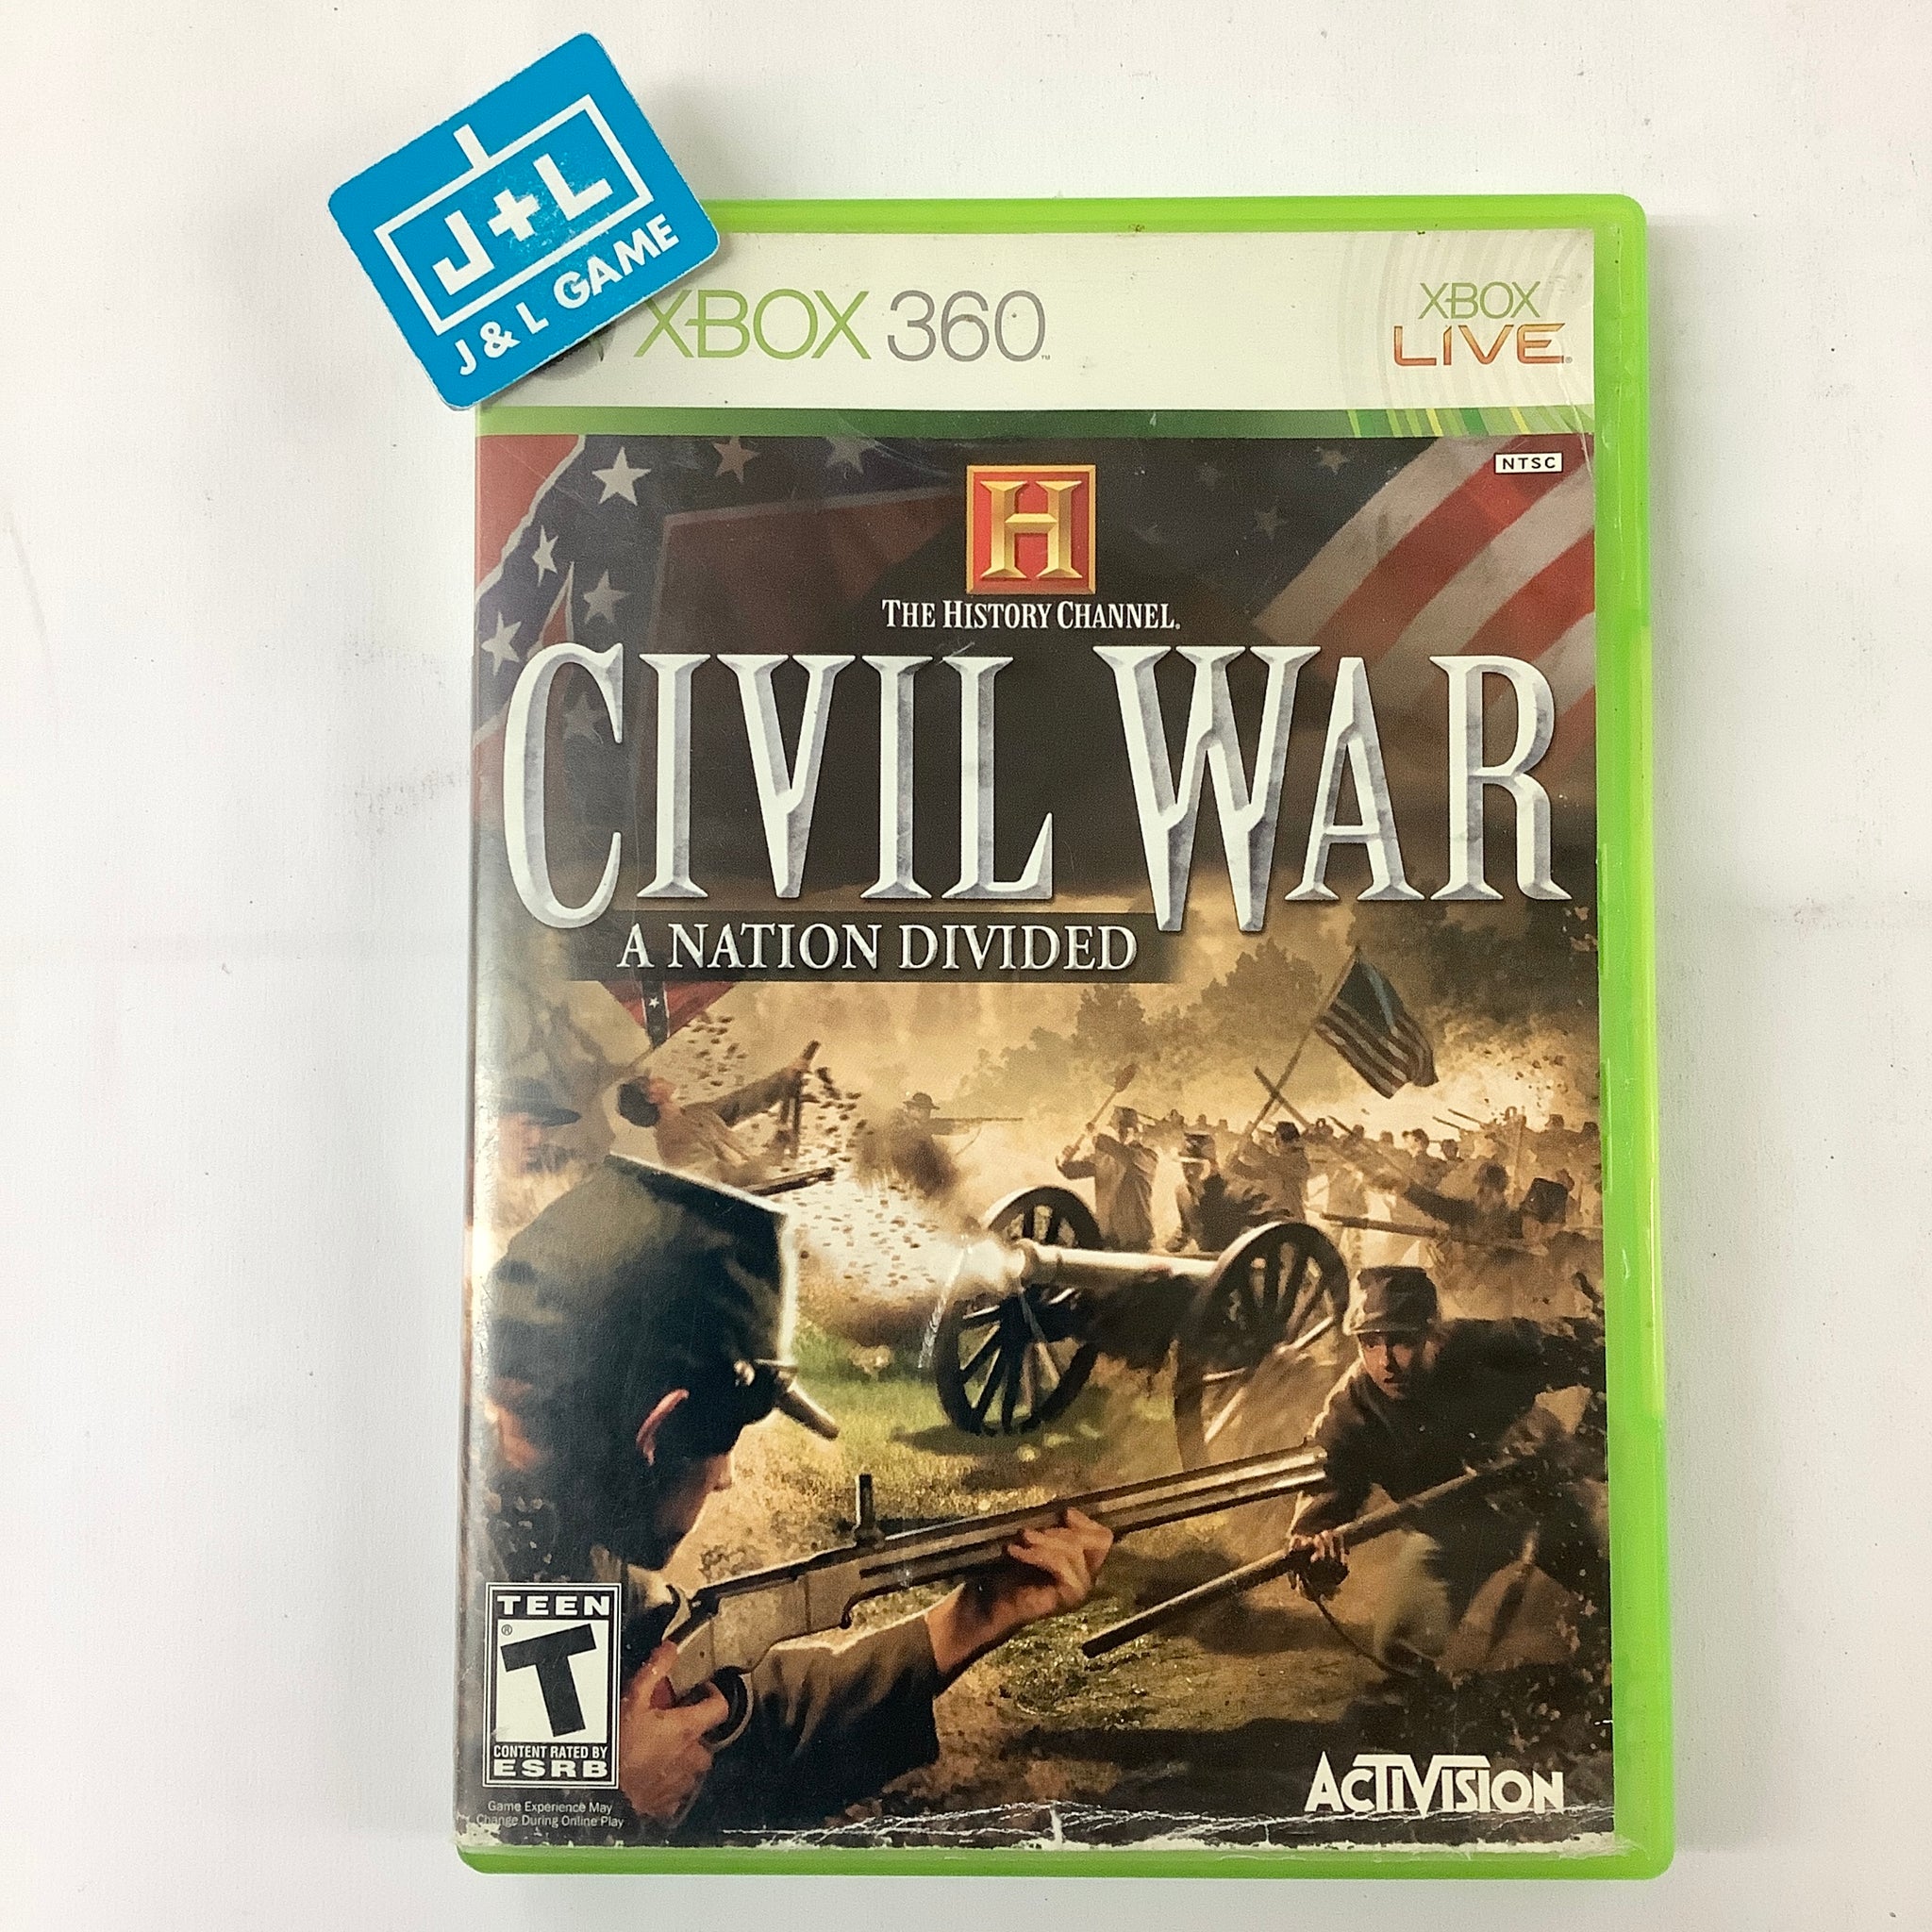 Lịch sử Thế chiến Civil War Channel của Xbox 360 sẽ đưa bạn vào thế giới đầy kịch tính và xoay quanh cuộc nội chiến thảm khốc nhất trong lịch sử nước Mỹ. Hãy cùng khám phá những chiến trường lịch sử và làm quen với những nhân vật quan trọng của thời đại đó.